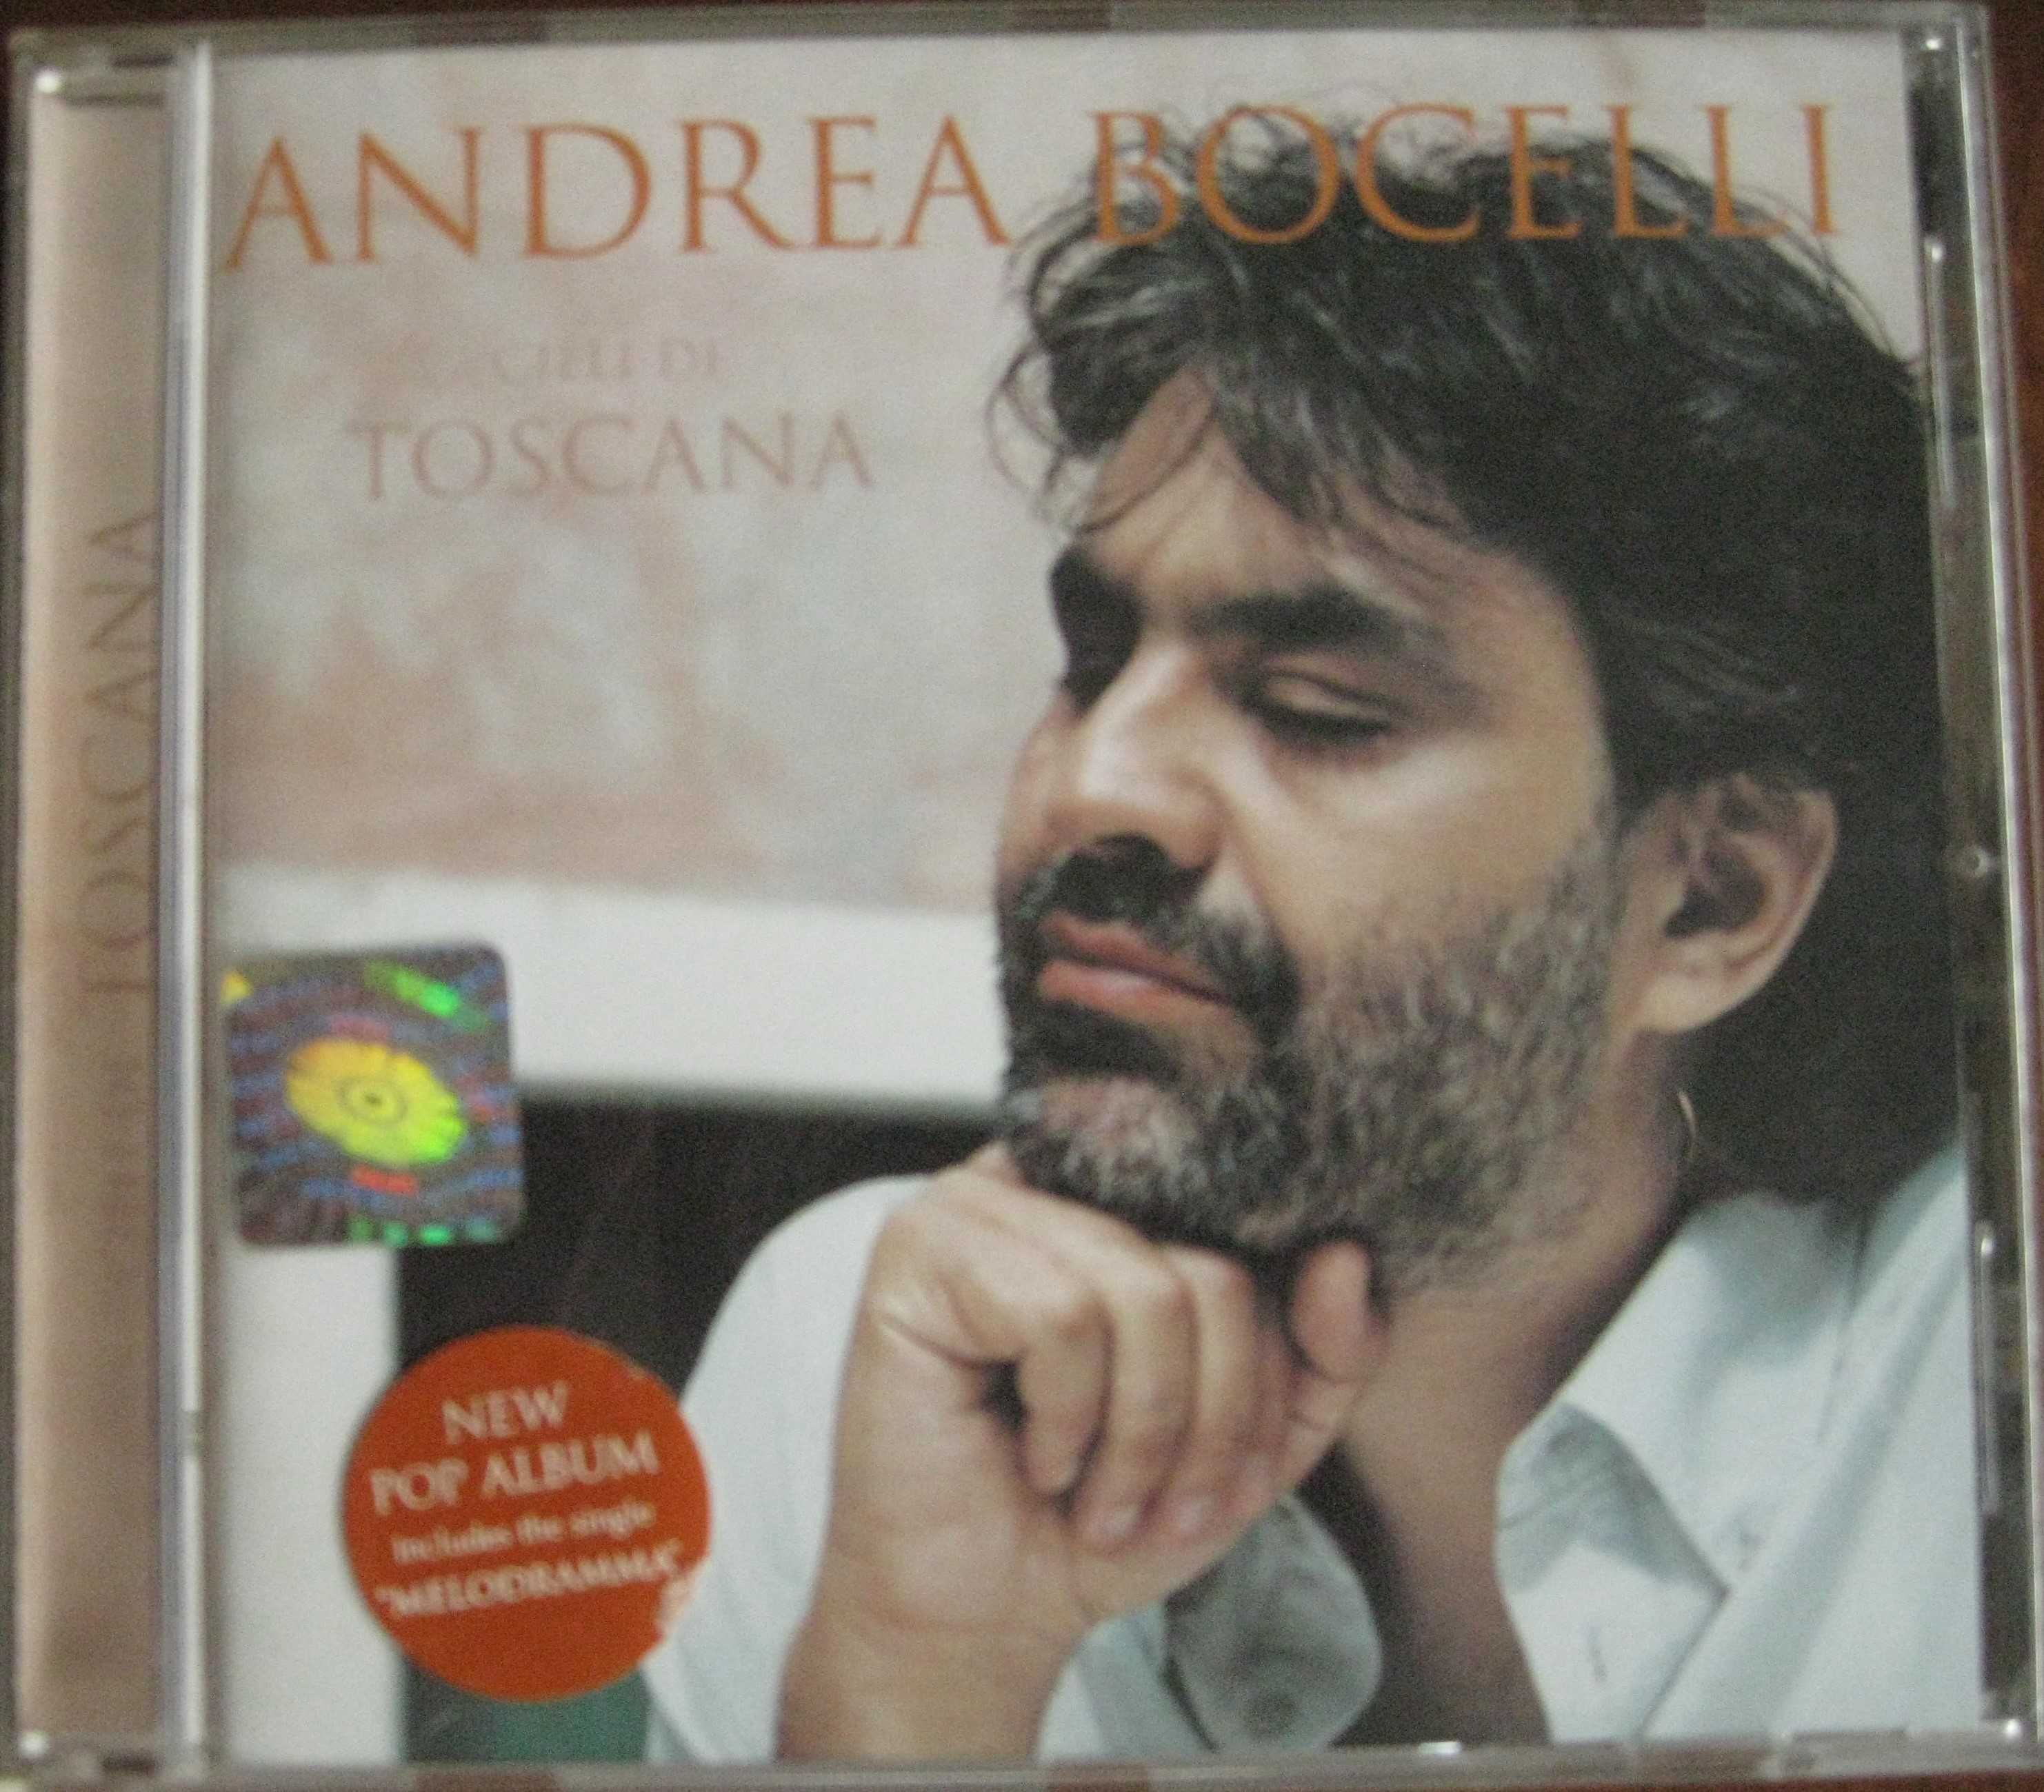 Andrea Bocelli: "Celi di Toscana", "Sogno", "Romanza" - 3 CD za 60 zł